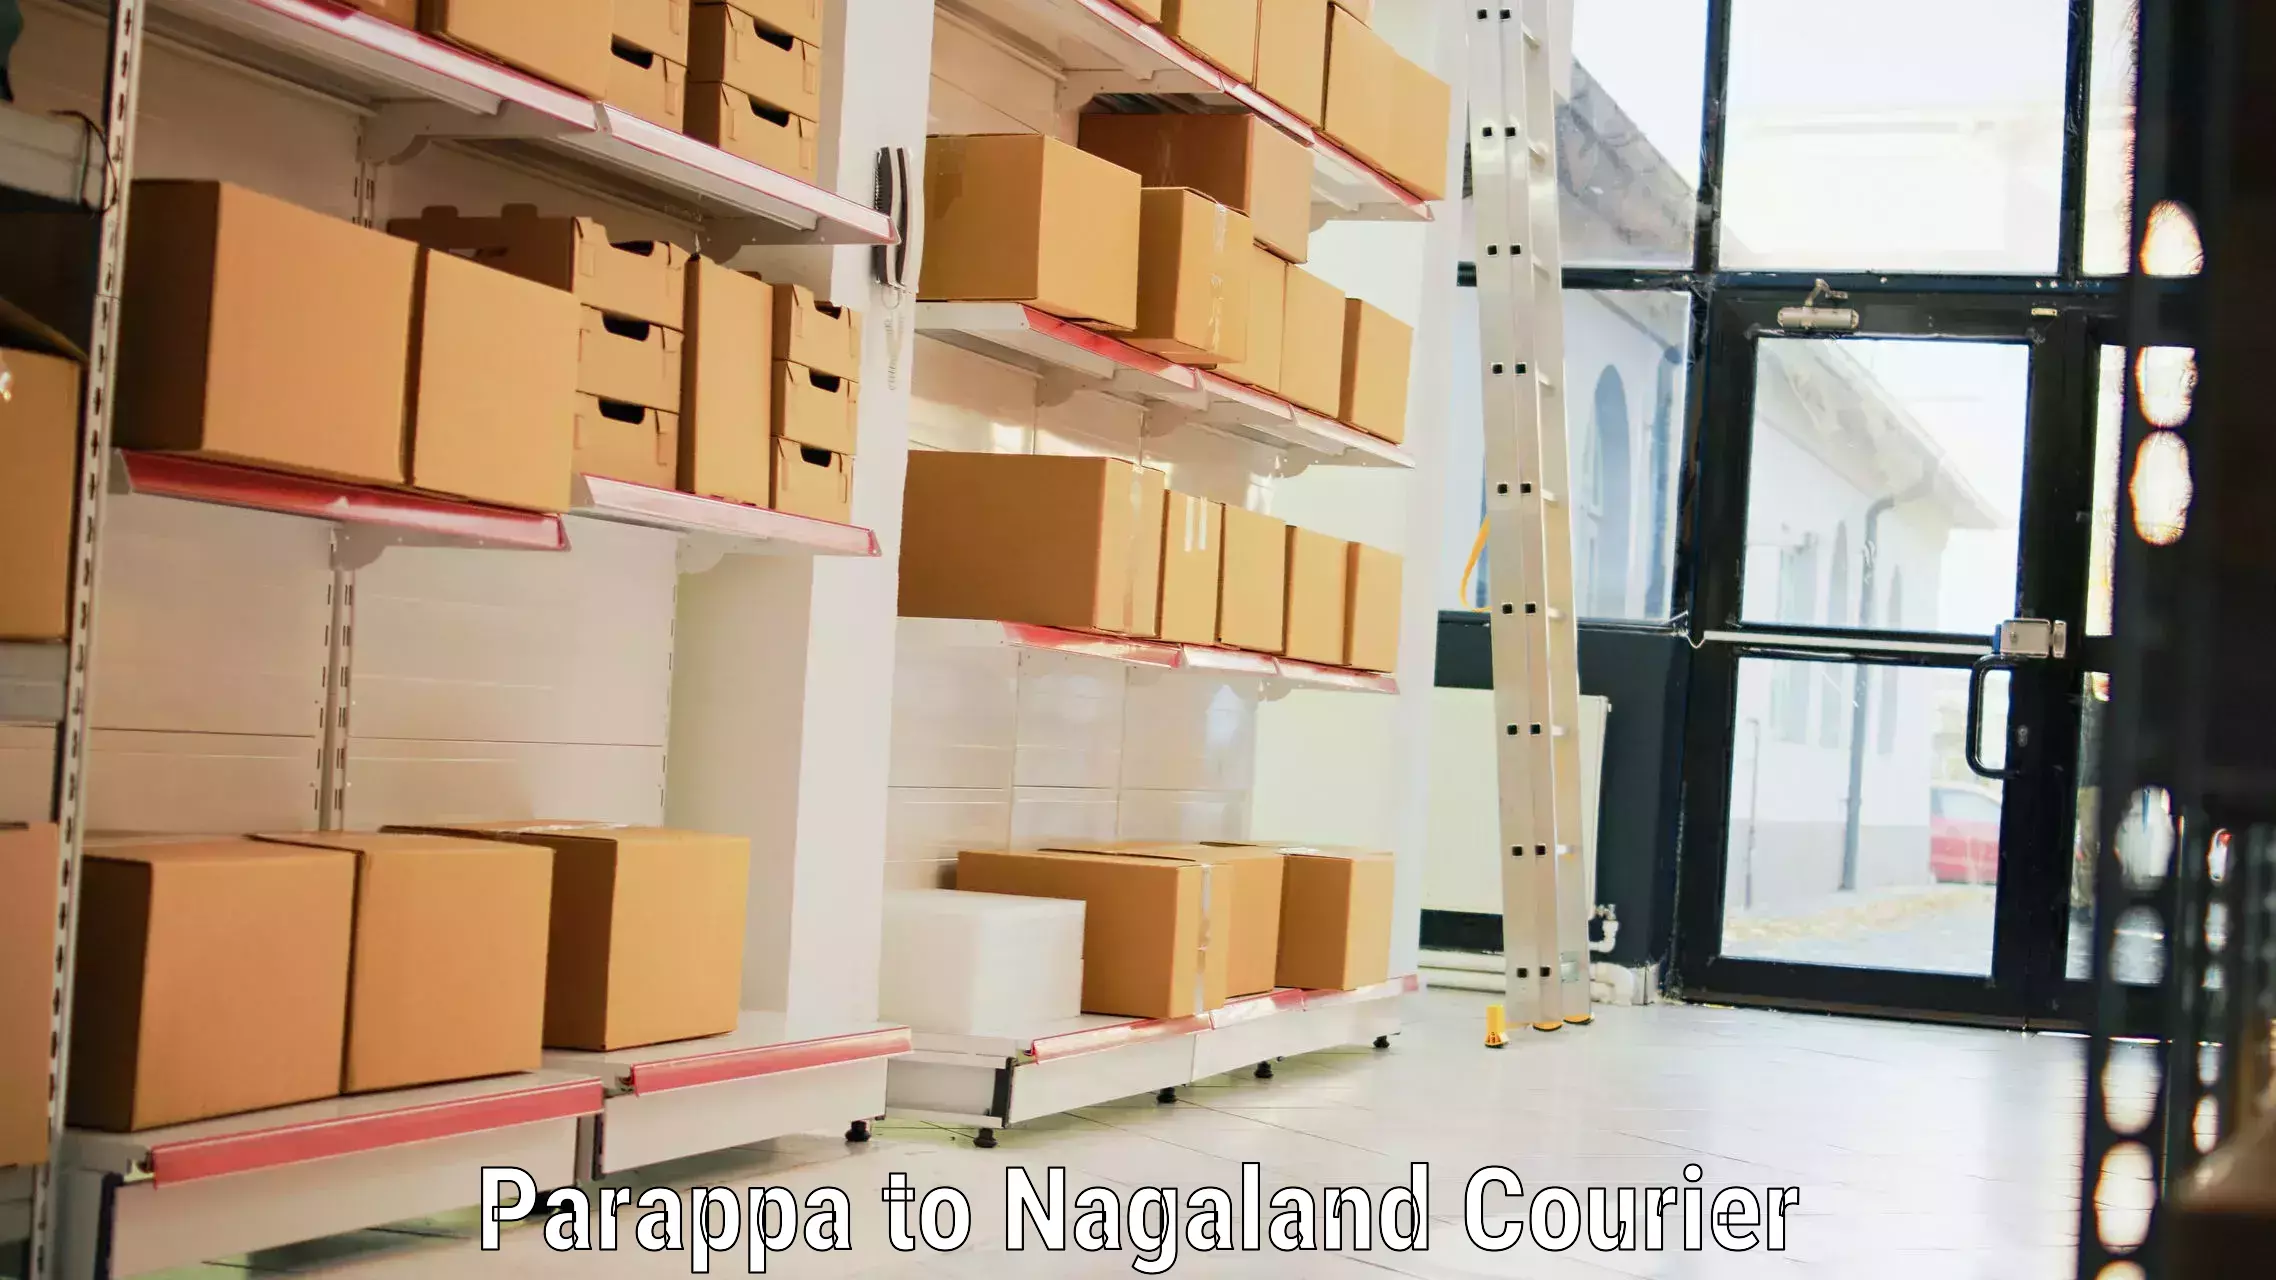 Door-to-door baggage service Parappa to Nagaland